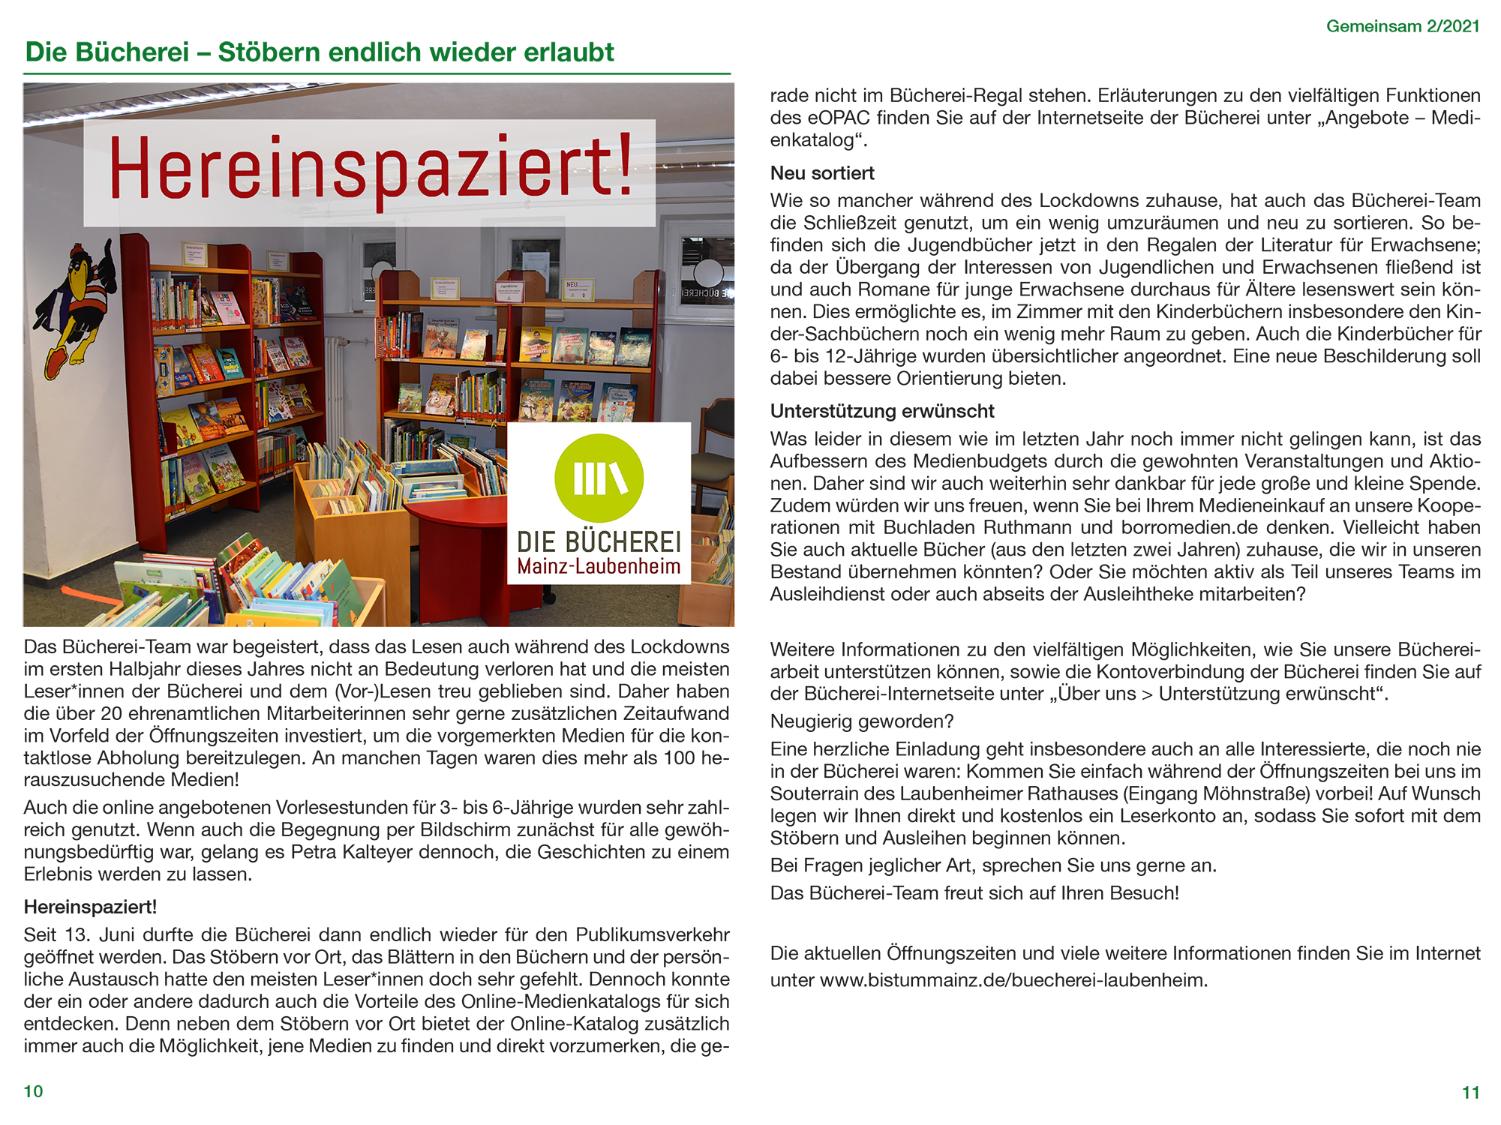 Wir wünschen viel Spaß beim Lesen! (c) Katholische Pfarrgemeinde Mainz-Laubenheim